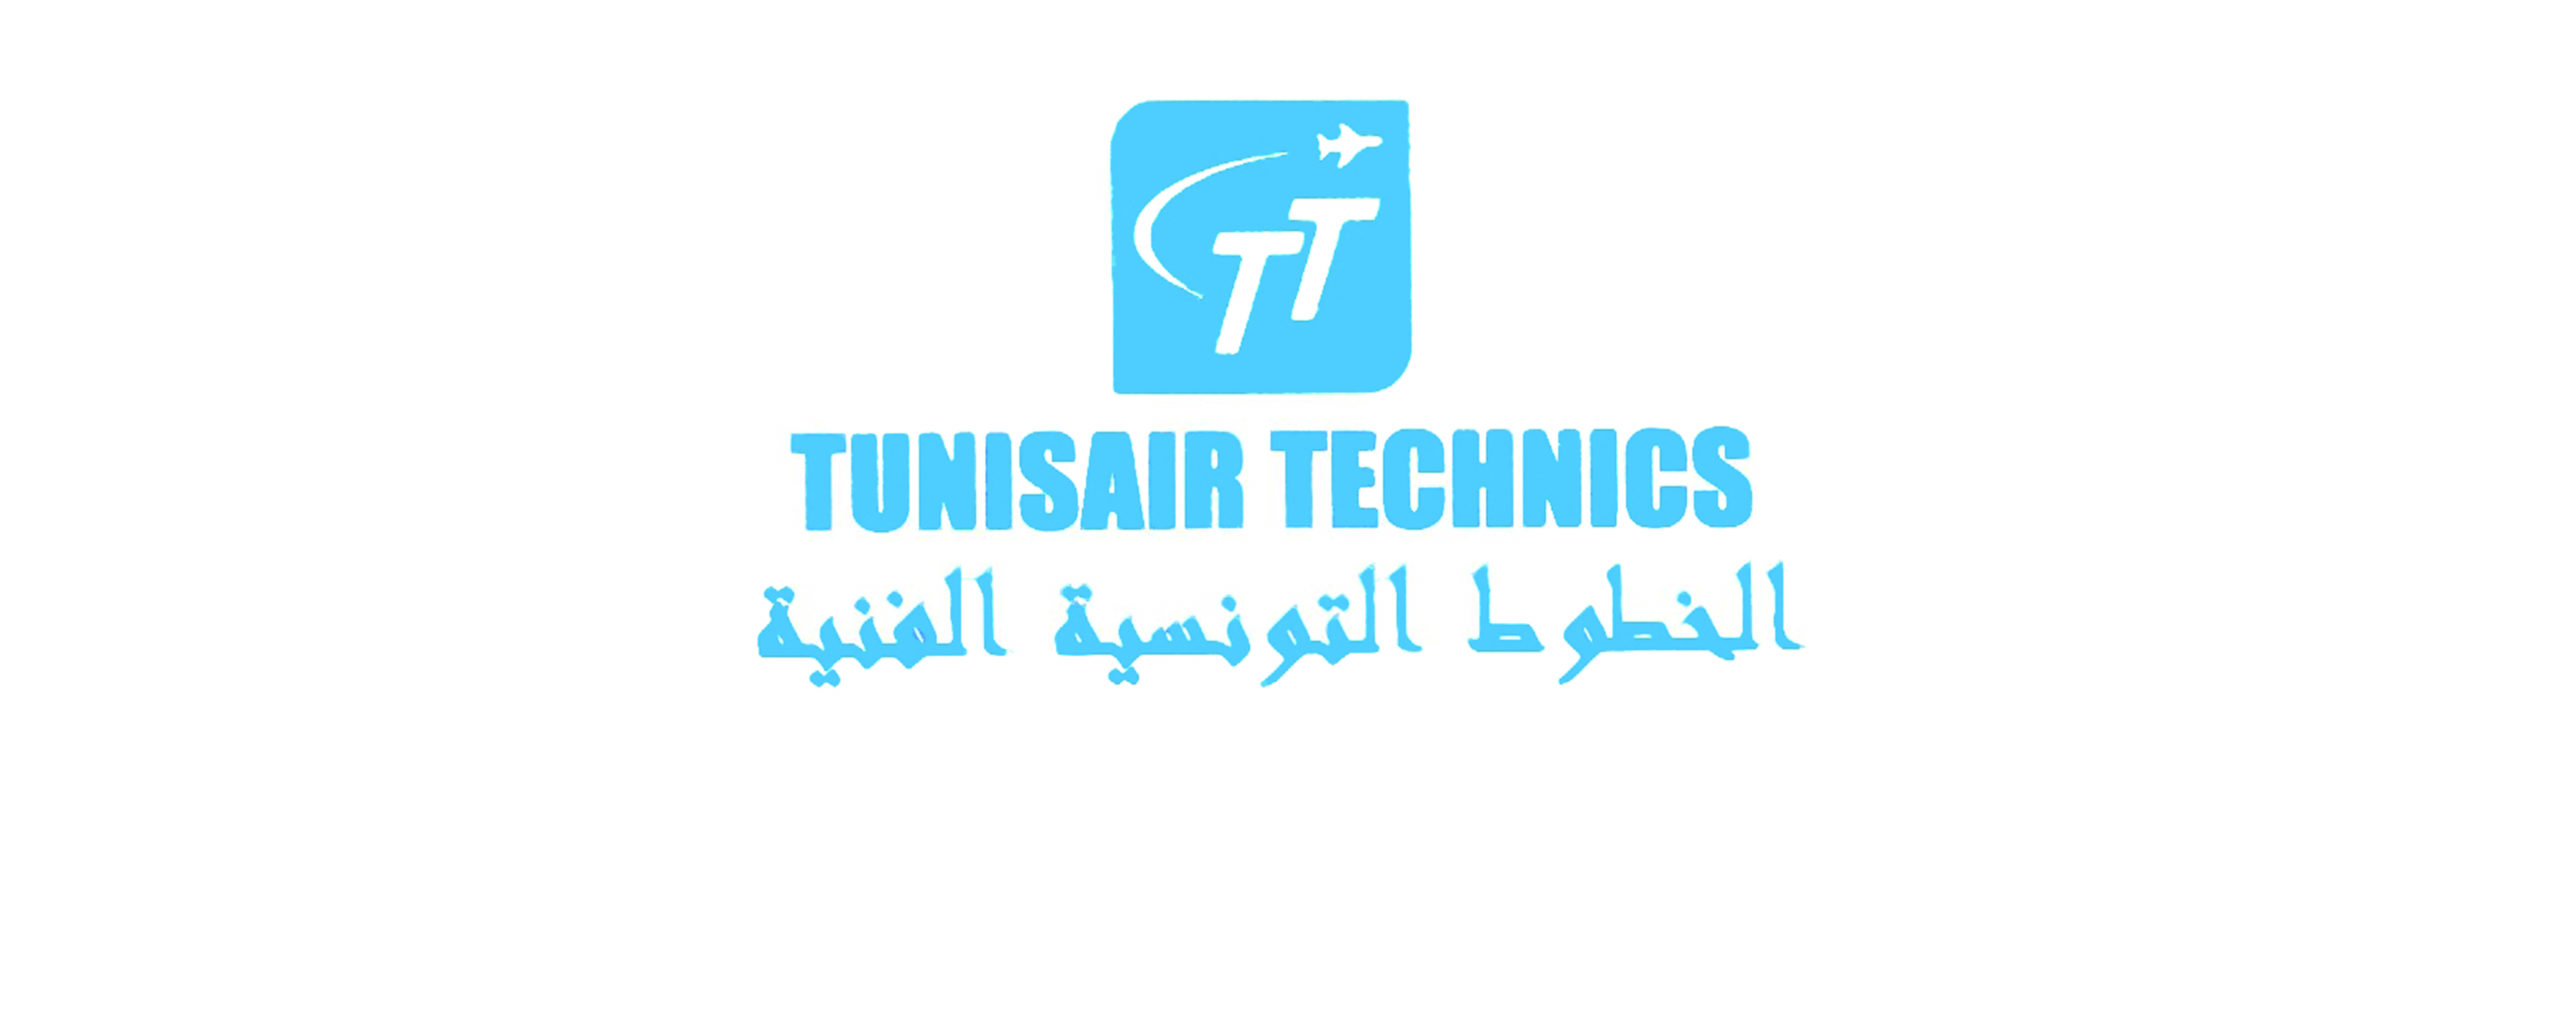 tunisair-technics